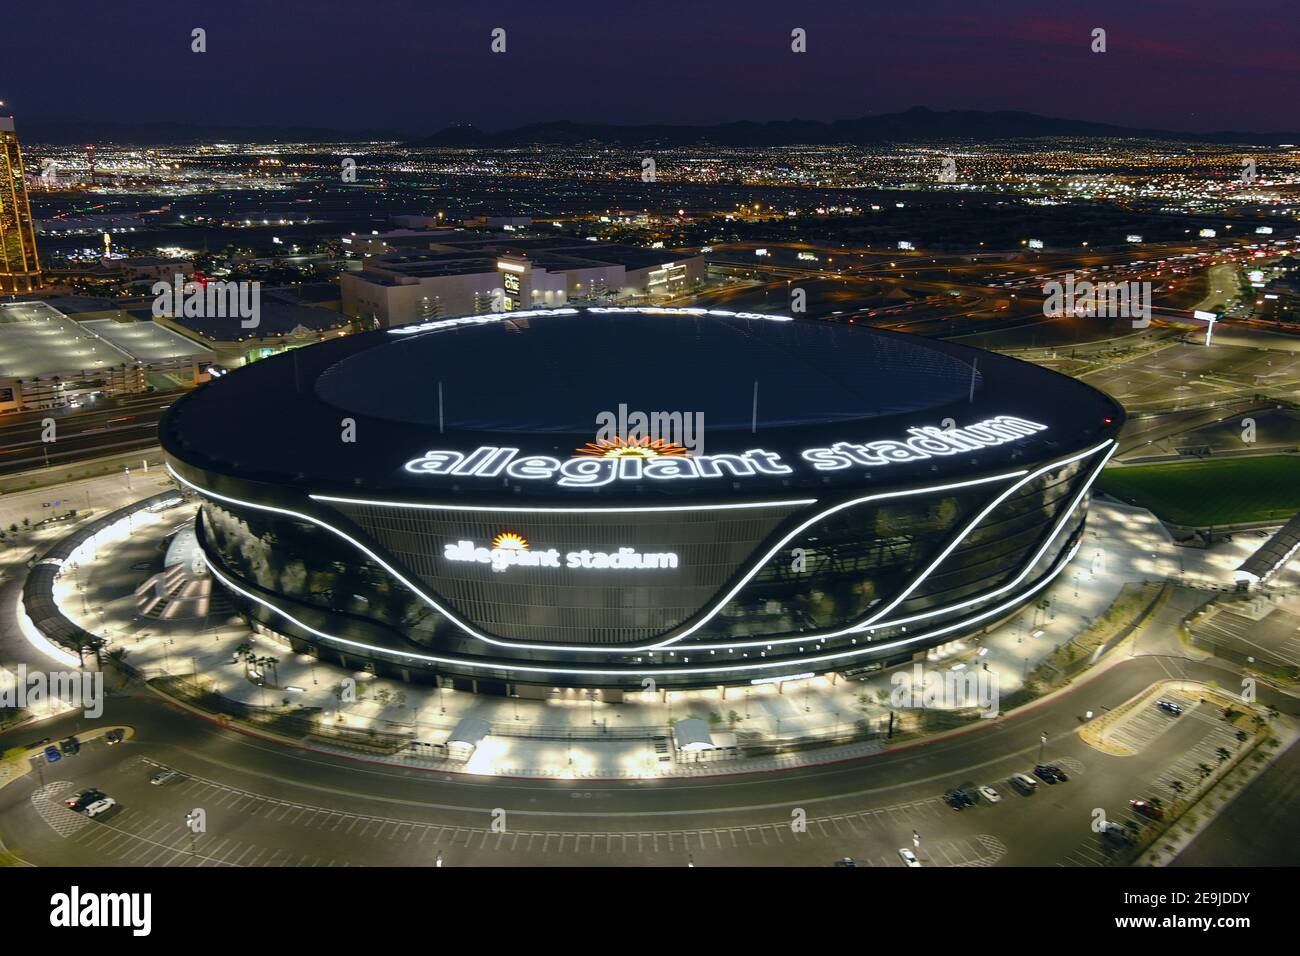 Una vista aerea dello stadio Allegiant, mercoledì 3 febbraio 2021, a Las Vegas. Lo stadio è la sede dei Las Vegas Raiders e dei ribelli dell'UNLV. Foto Stock